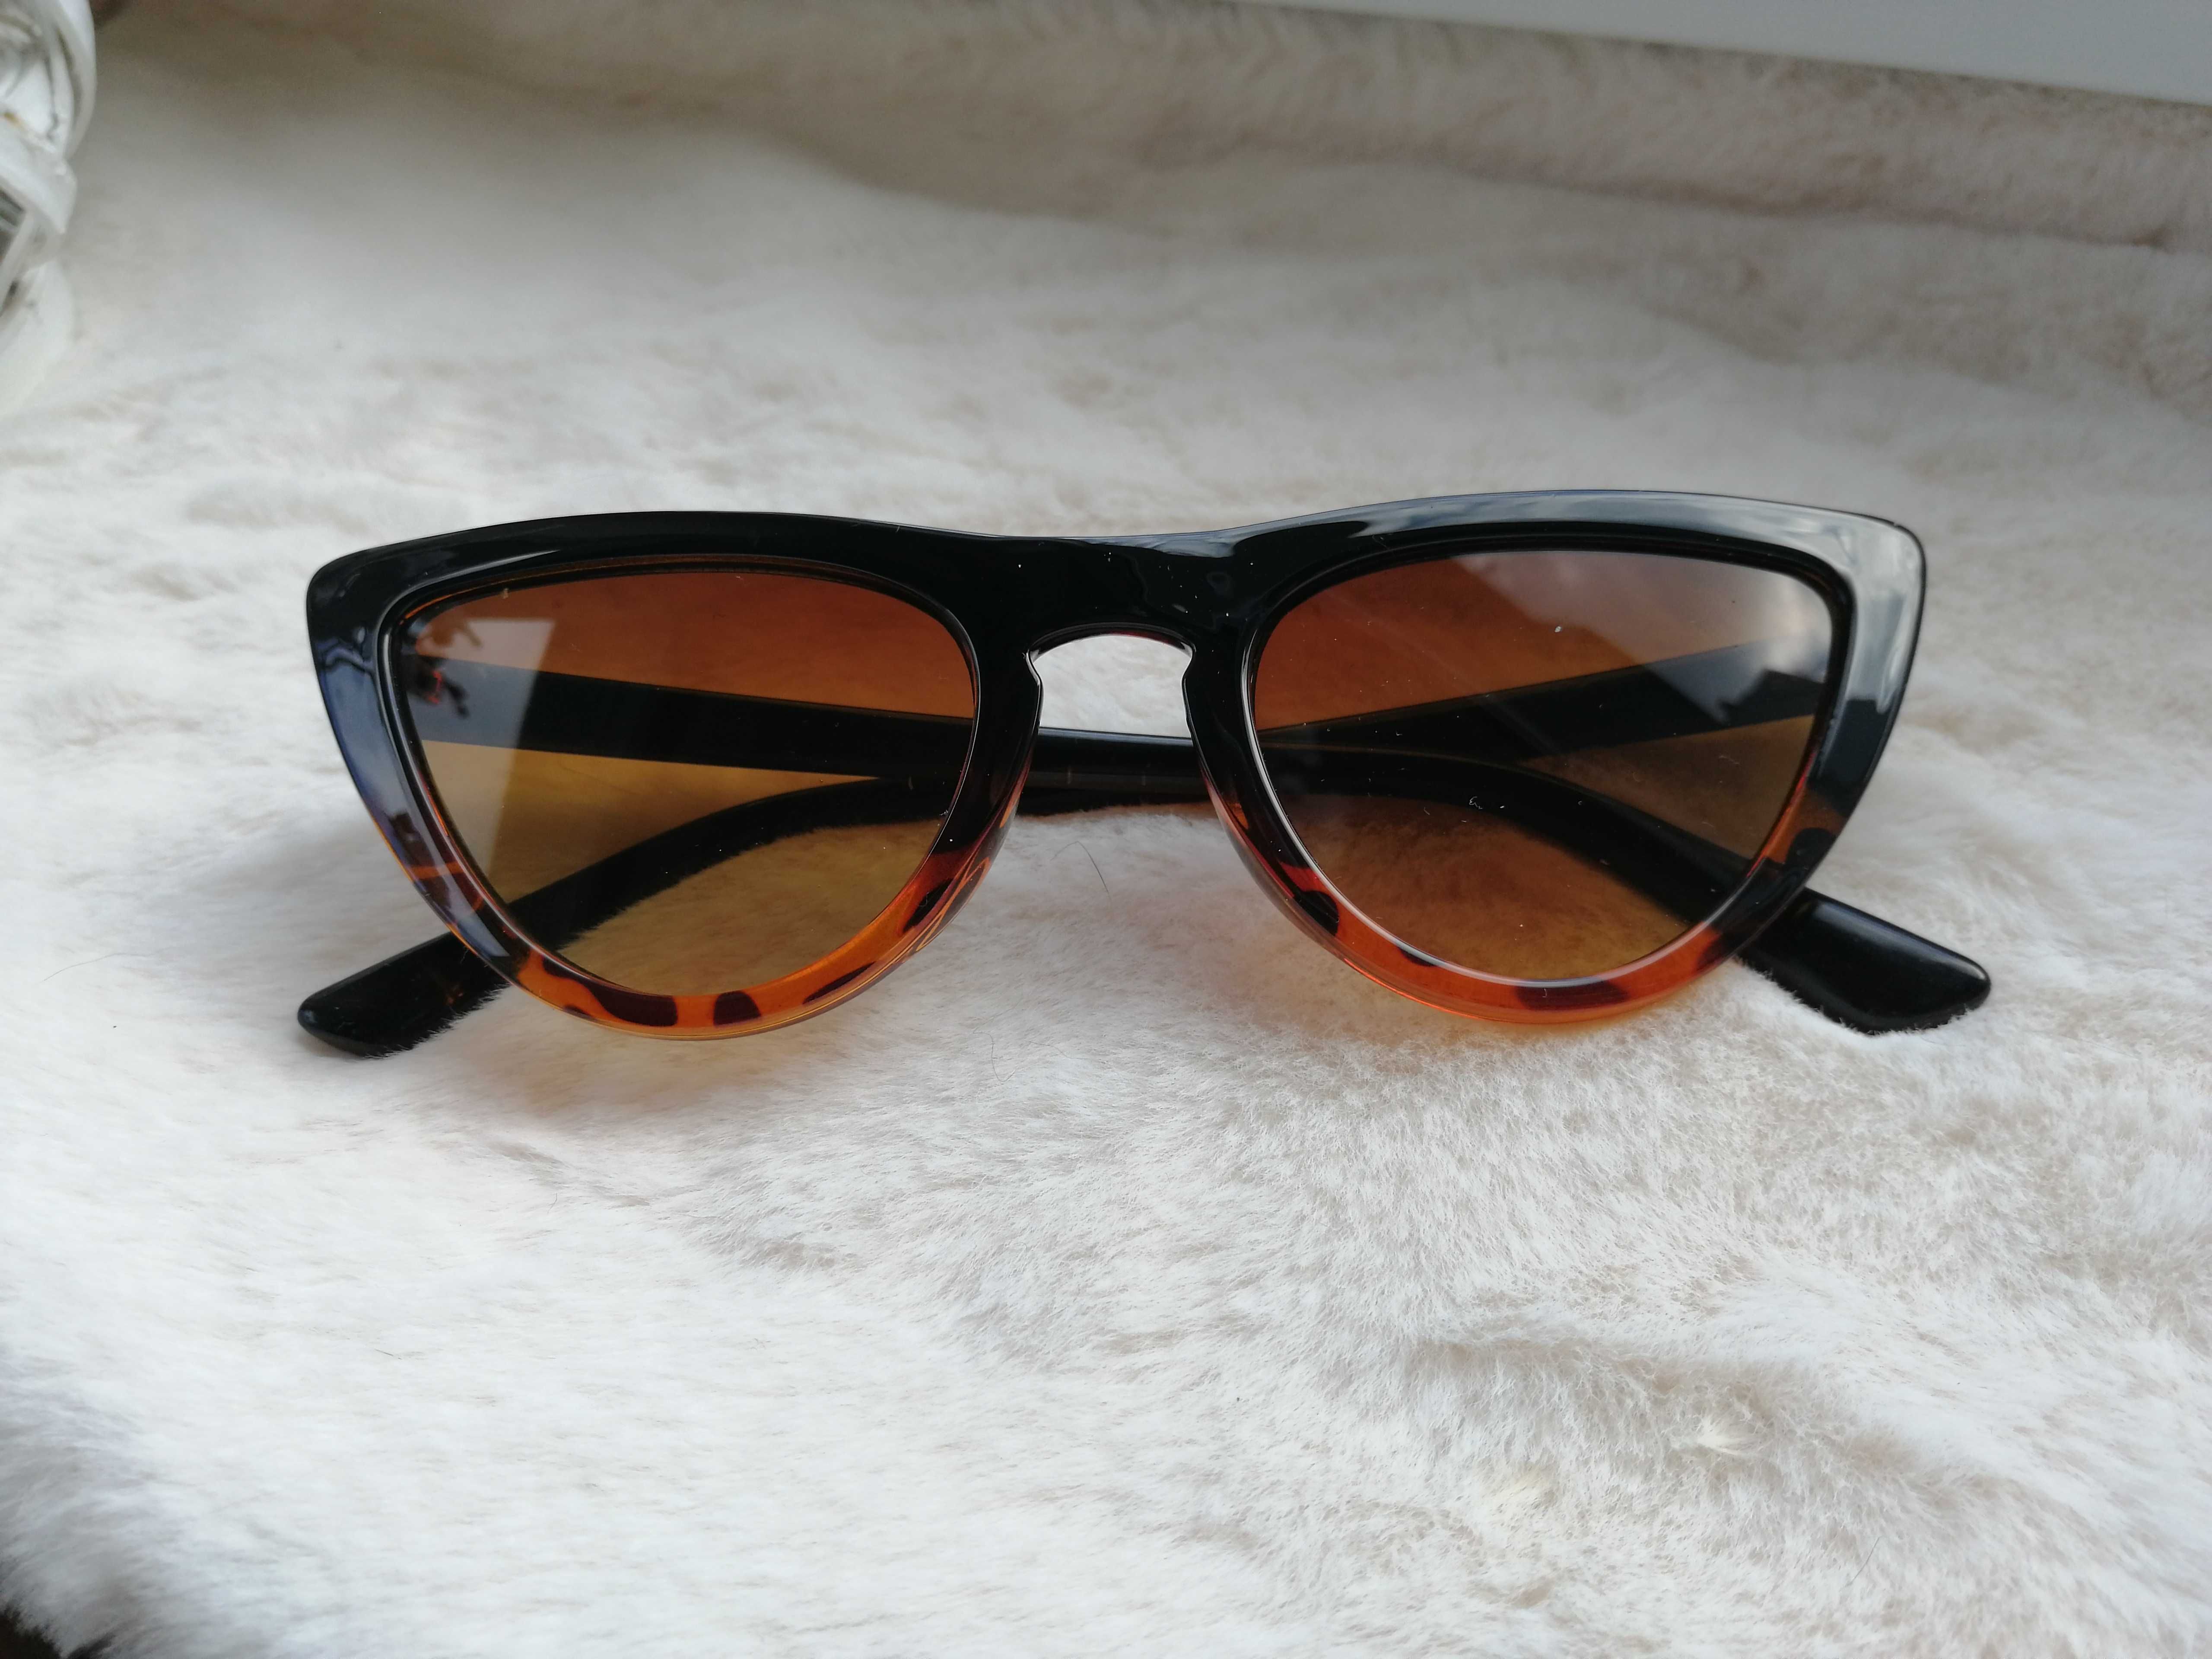 Okulary damskie przeciwsłoneczne panterka brąz kocie oczy UV400